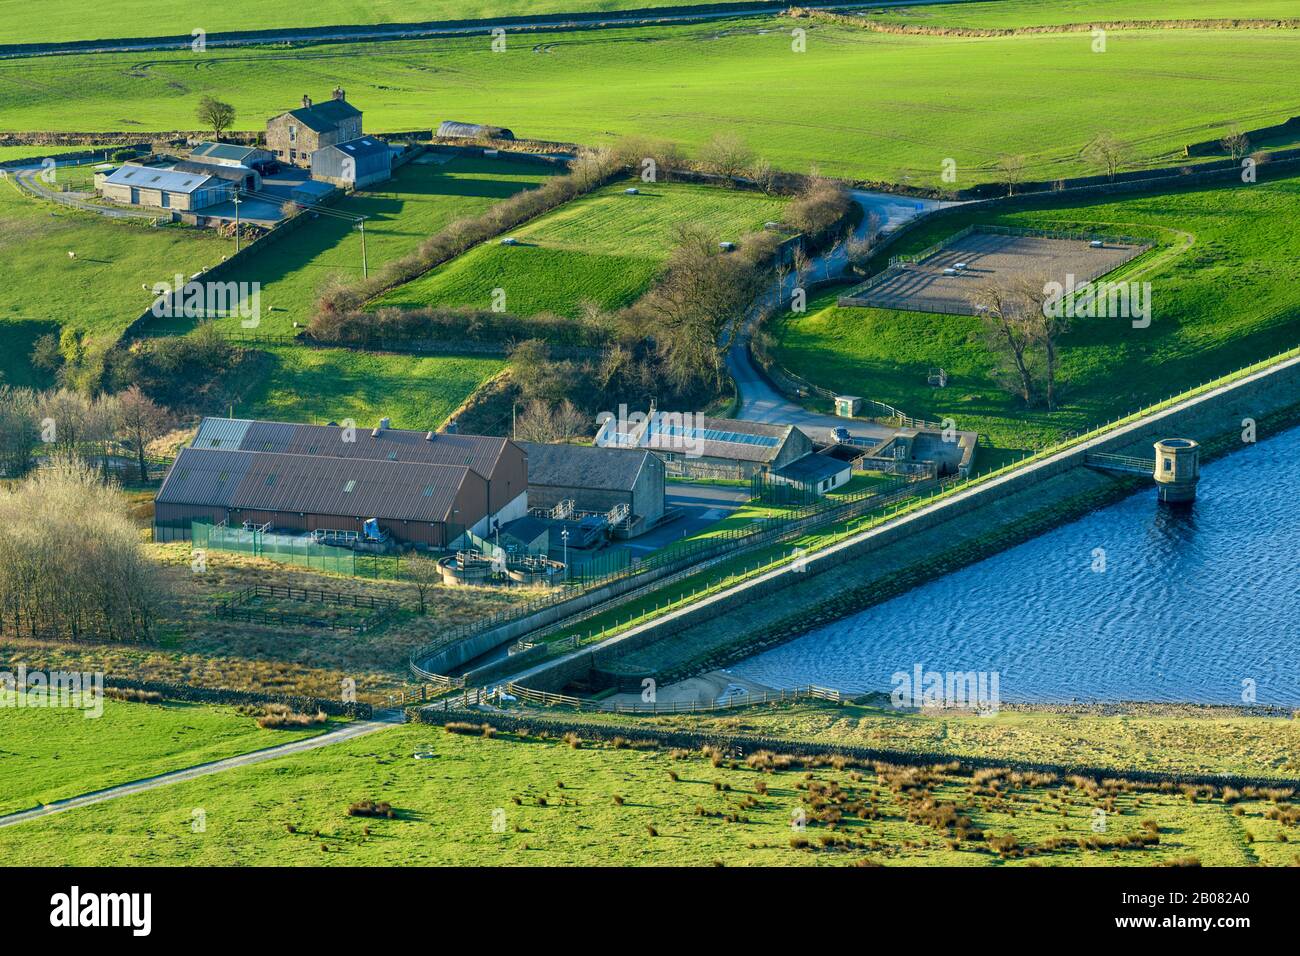 Hoch sonniger Blick auf die ländlichen Felder, die Böschungsmauer, den Staudamm, den Ventilturm und die Wasseraufbereitungsarbeiten am Embsay Reservoir - North Yorkshire, England, Großbritannien. Stockfoto